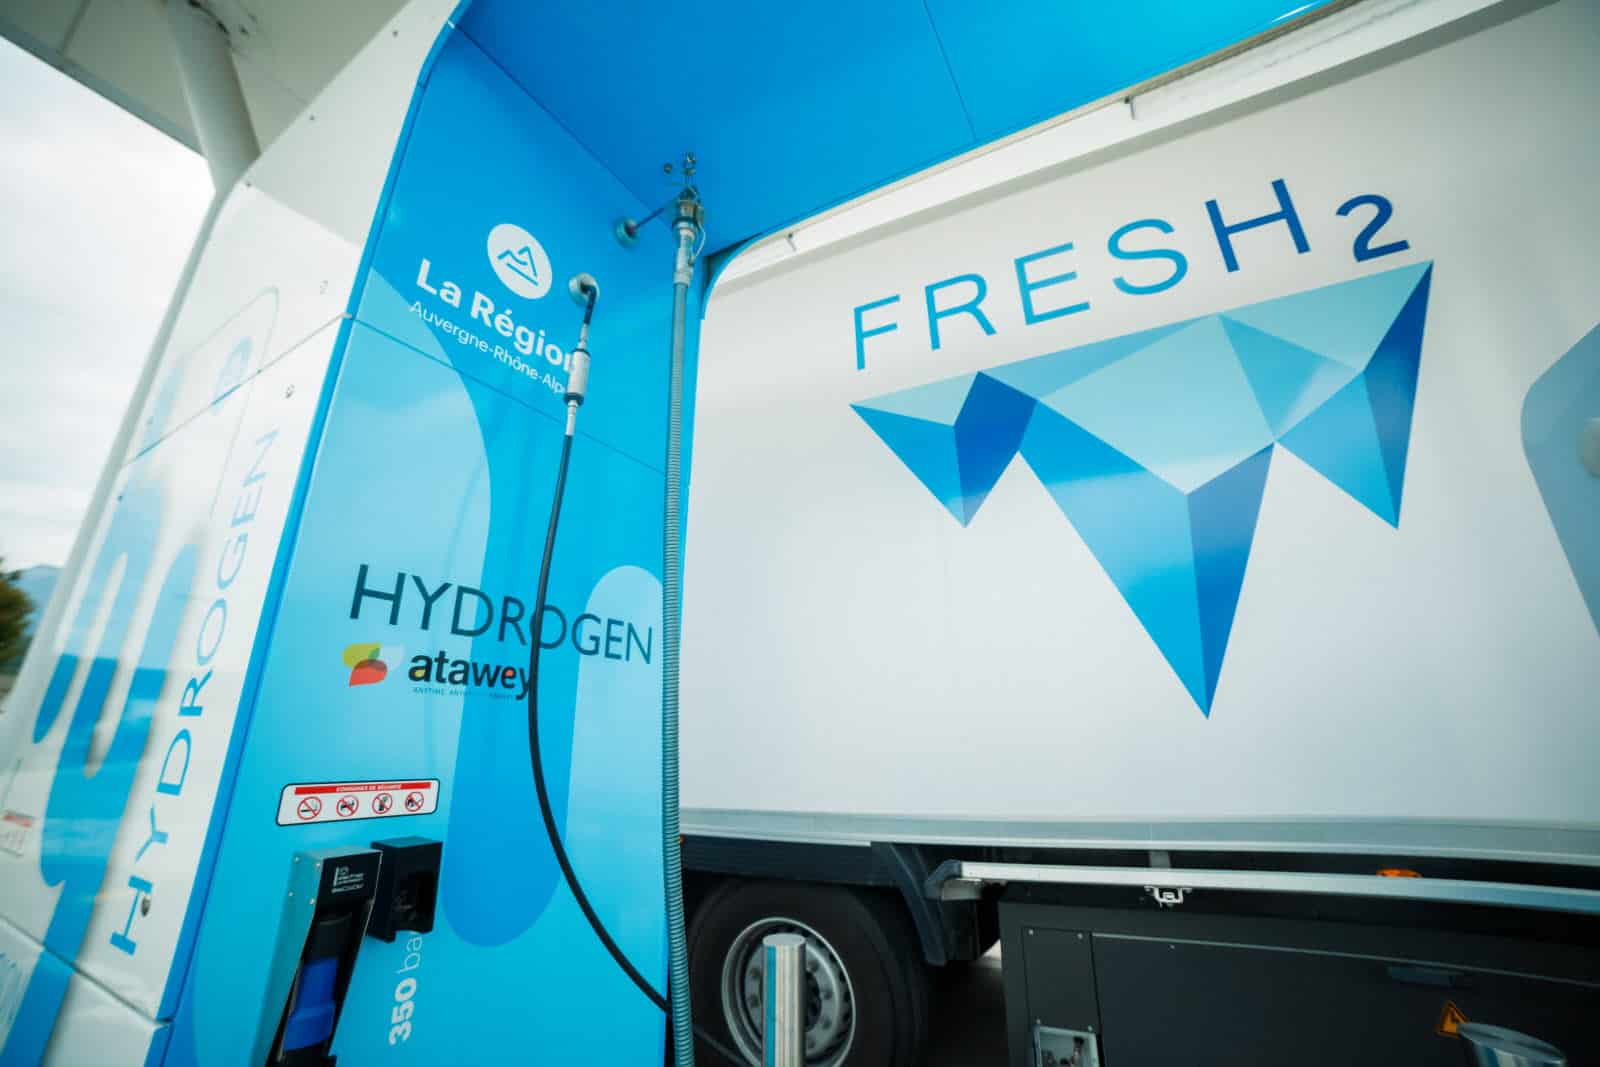 Transport réfrigéré à pile à combustible hydrogène : qu’est-ce que le projet « fresh2 » porté par bosch ?